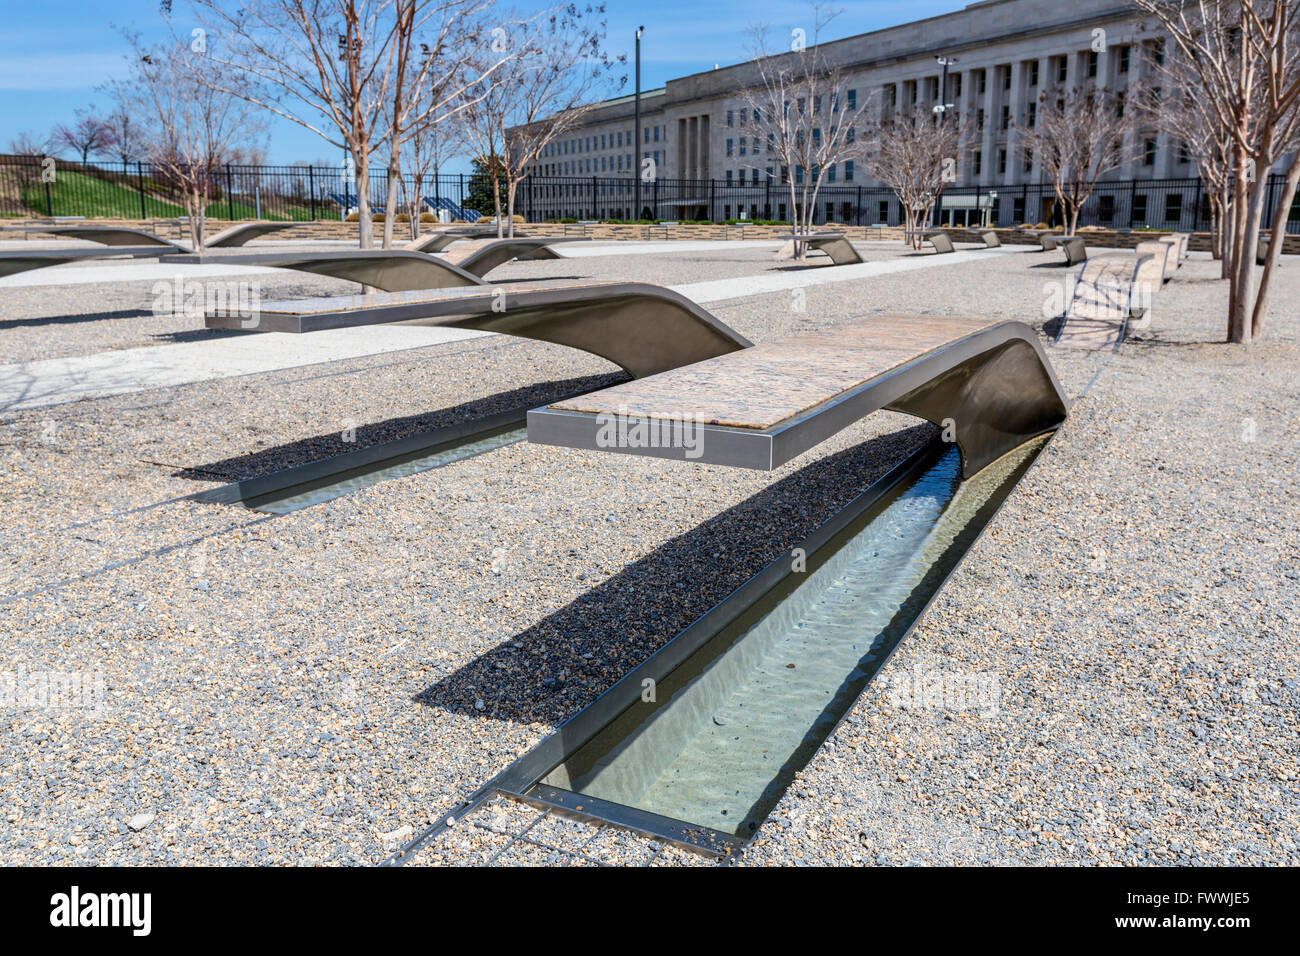 Pentagon Memorial, Contea di Arlington, Virginia, Stati Uniti d'America. Singoli memoriali ciascuno ad una sola vittima. Pentagono edificio sulla destra. Foto Stock